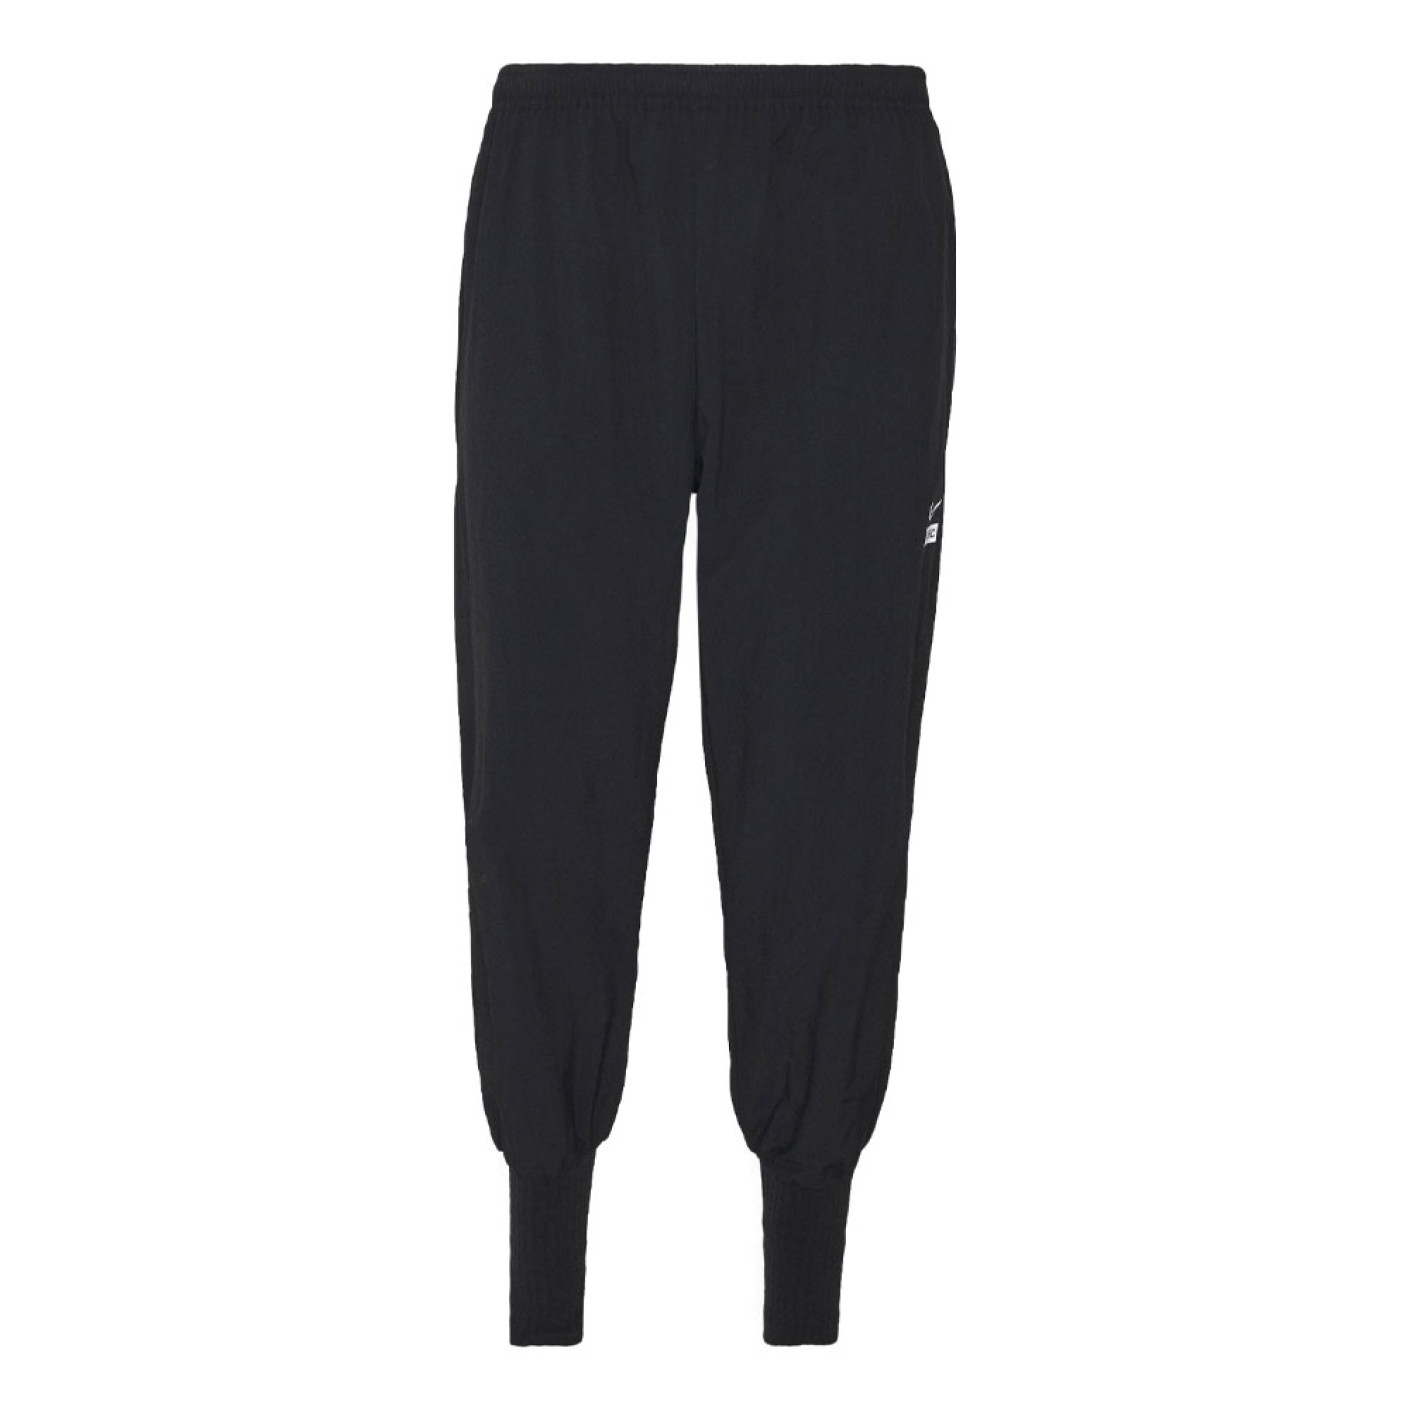 Pantalon d'entraînement Nike F.C. Tissé à revers Noir Blanc Argent